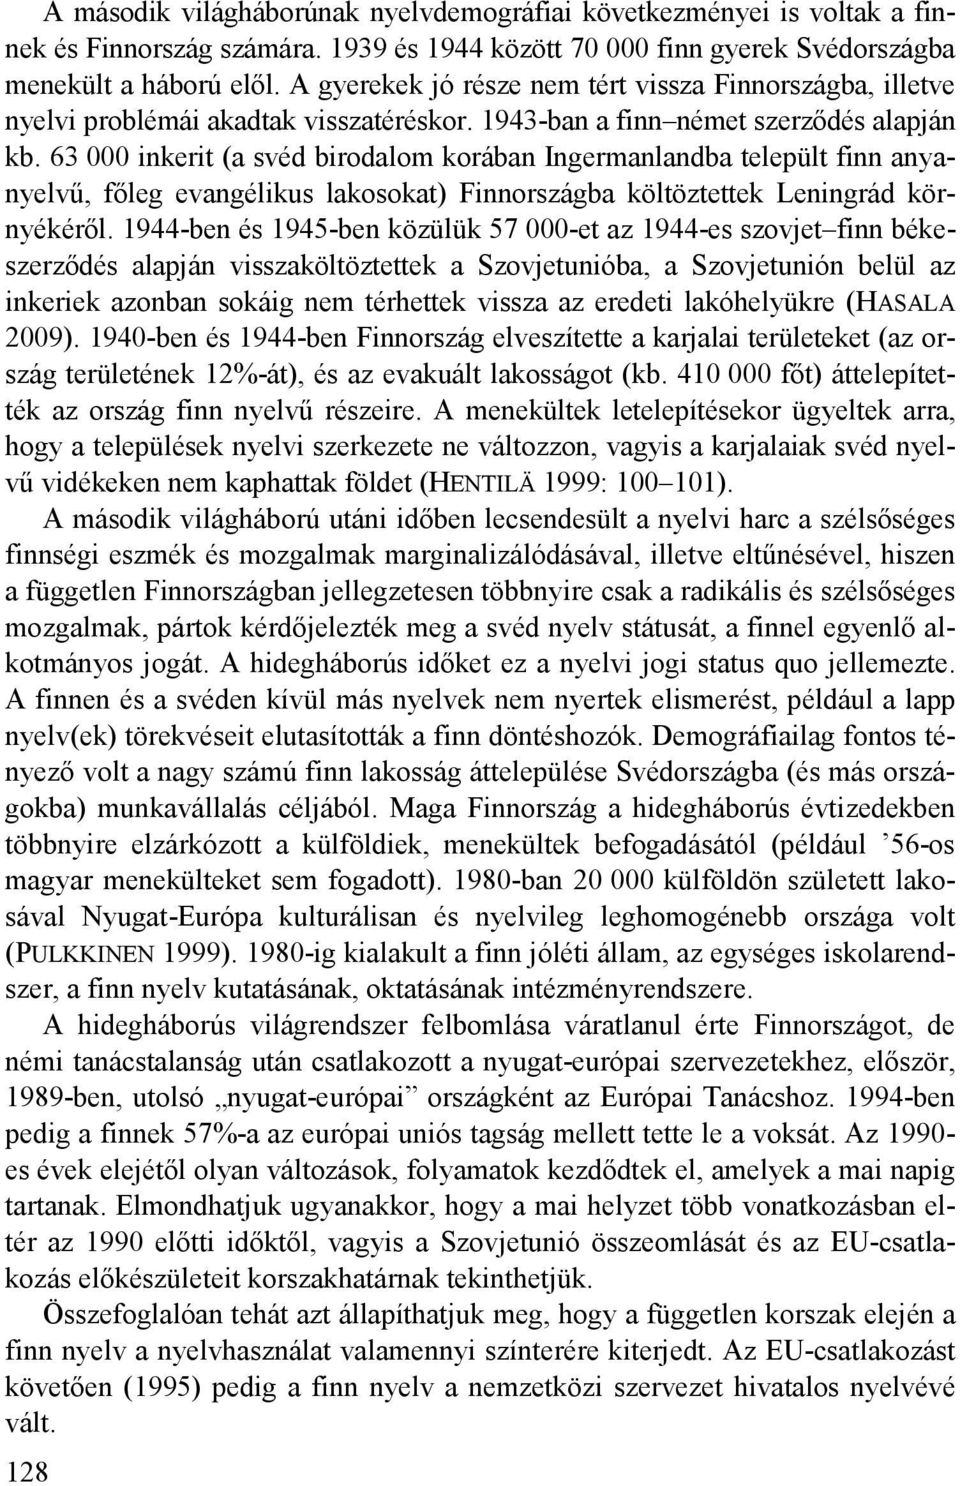 63 000 inkerit (a svéd birodalom korában Ingermanlandba települt finn anyanyelvű, főleg evangélikus lakosokat) Finnországba költöztettek Leningrád környékéről.